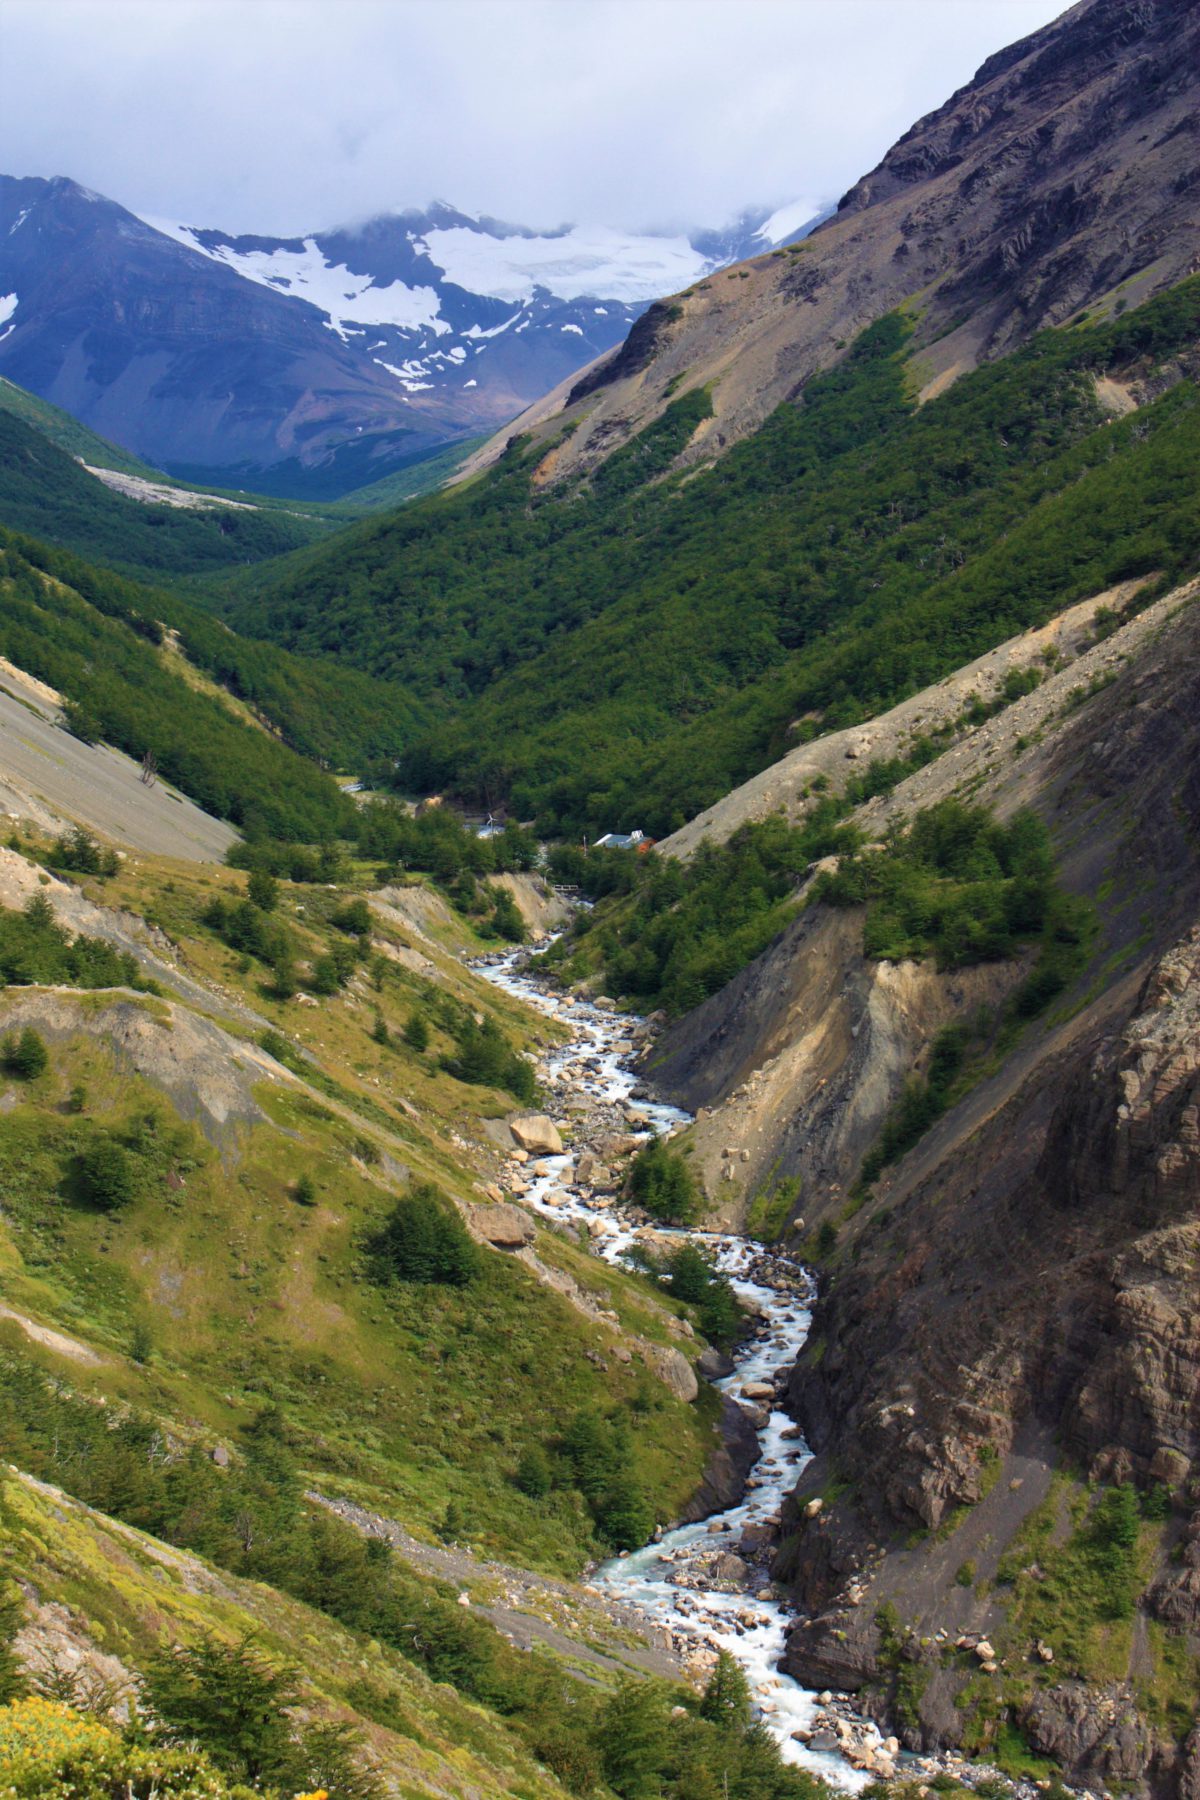 Park Narodowy Torres del Paine jest niewątpliwie jednym z najpiękniejszych miejsc na świecie